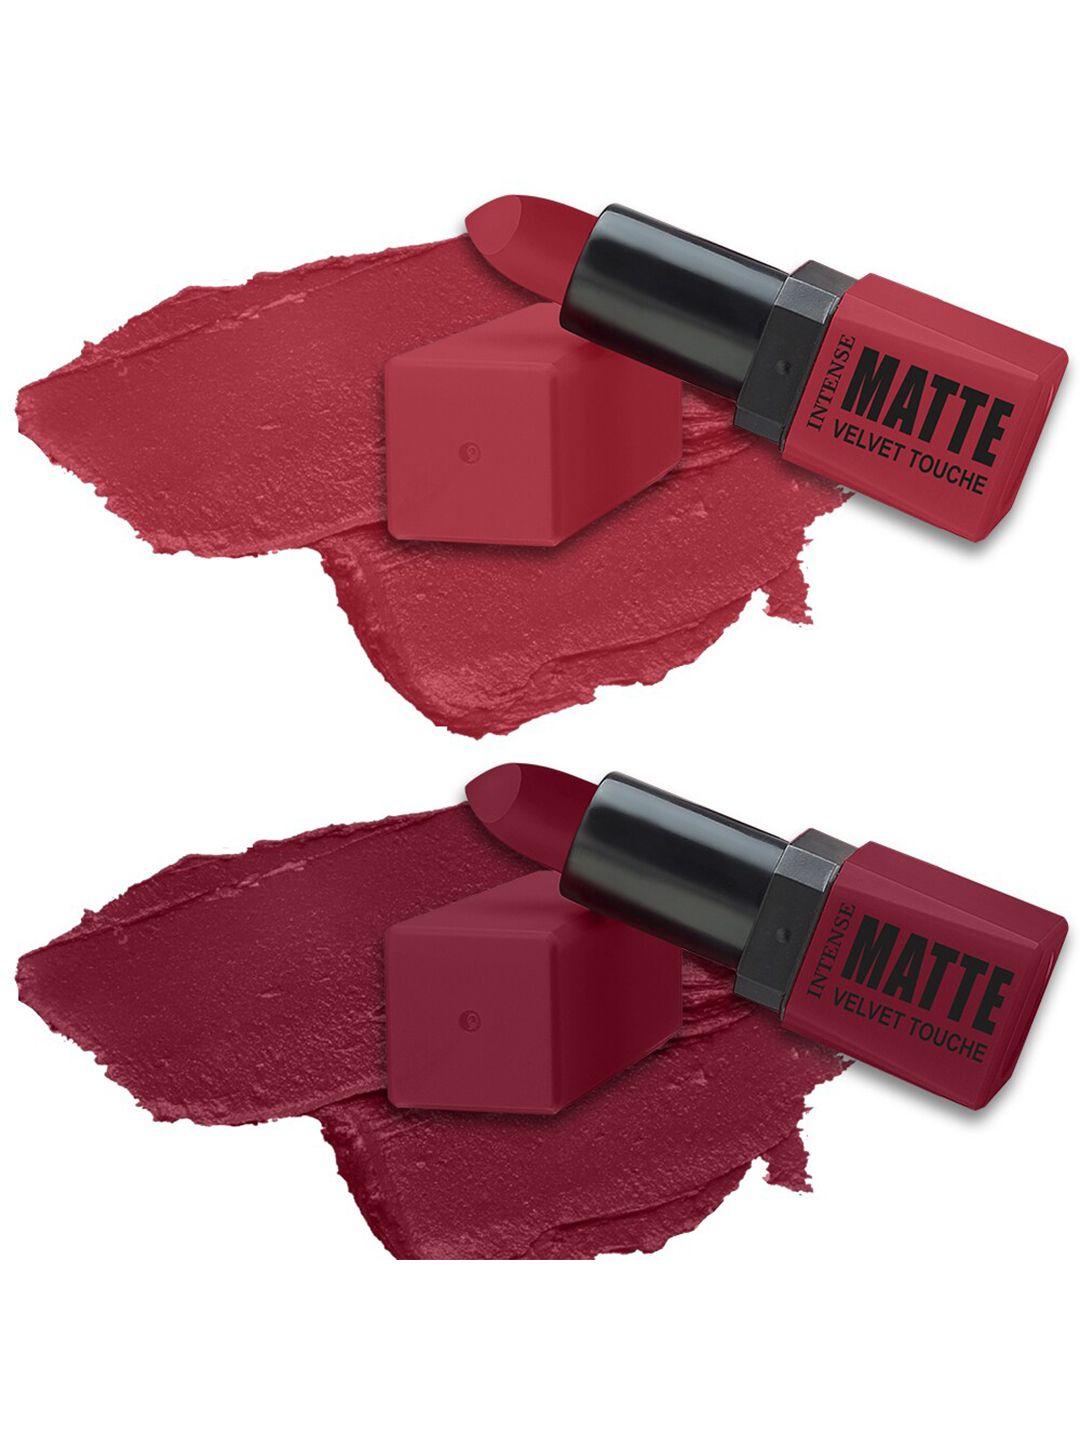 forsure set of 2 long-lasting smooth intense matte velvet touche lipstick - 3.5g each